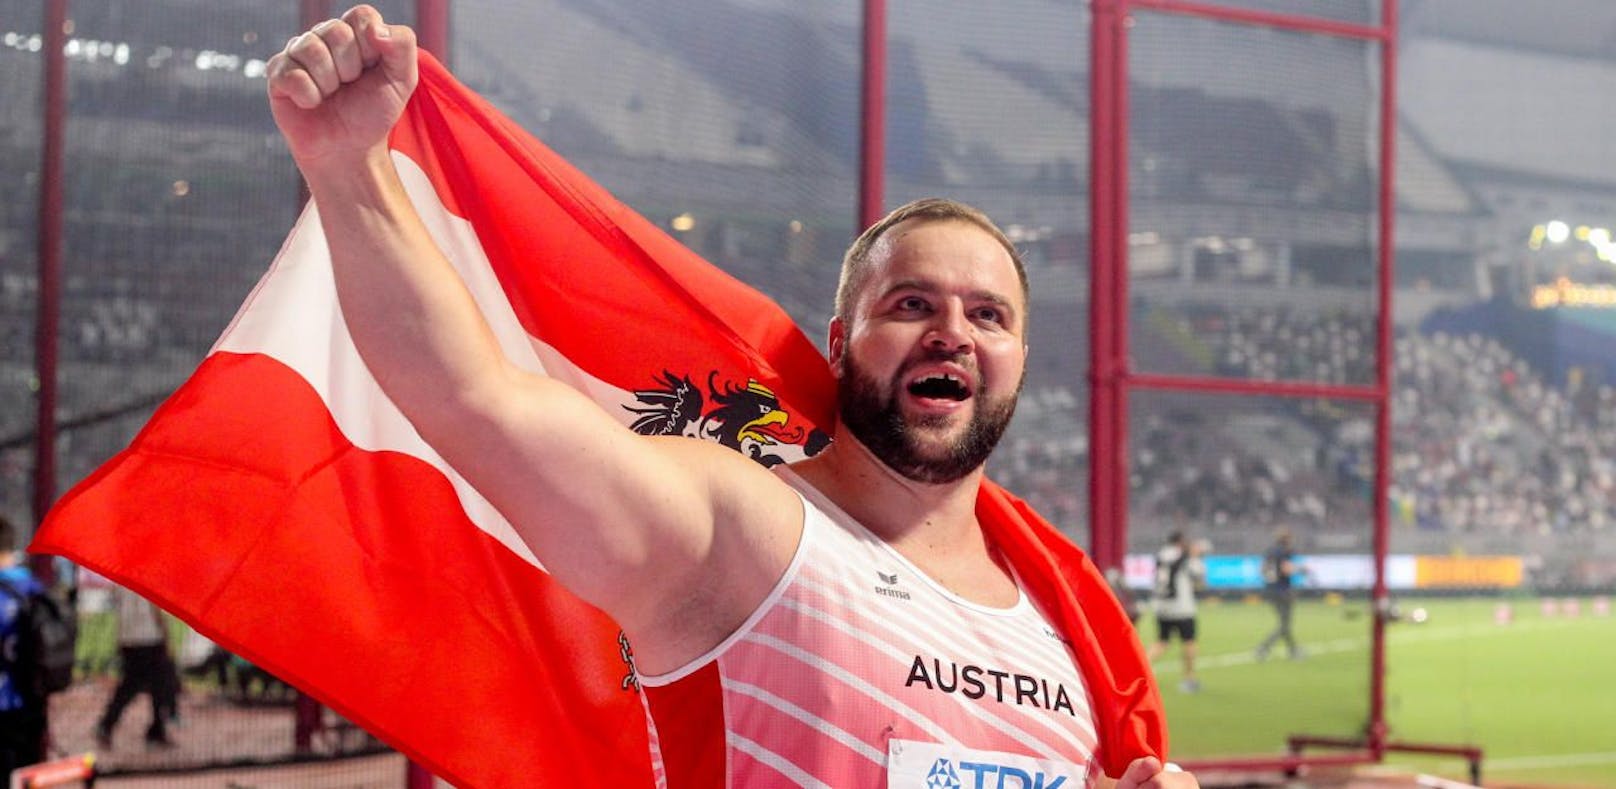 Lukas Weißhaidinger holte mit Bronze die erste österreichische WM-Medaille bei den Leichtathletik-Männern. 